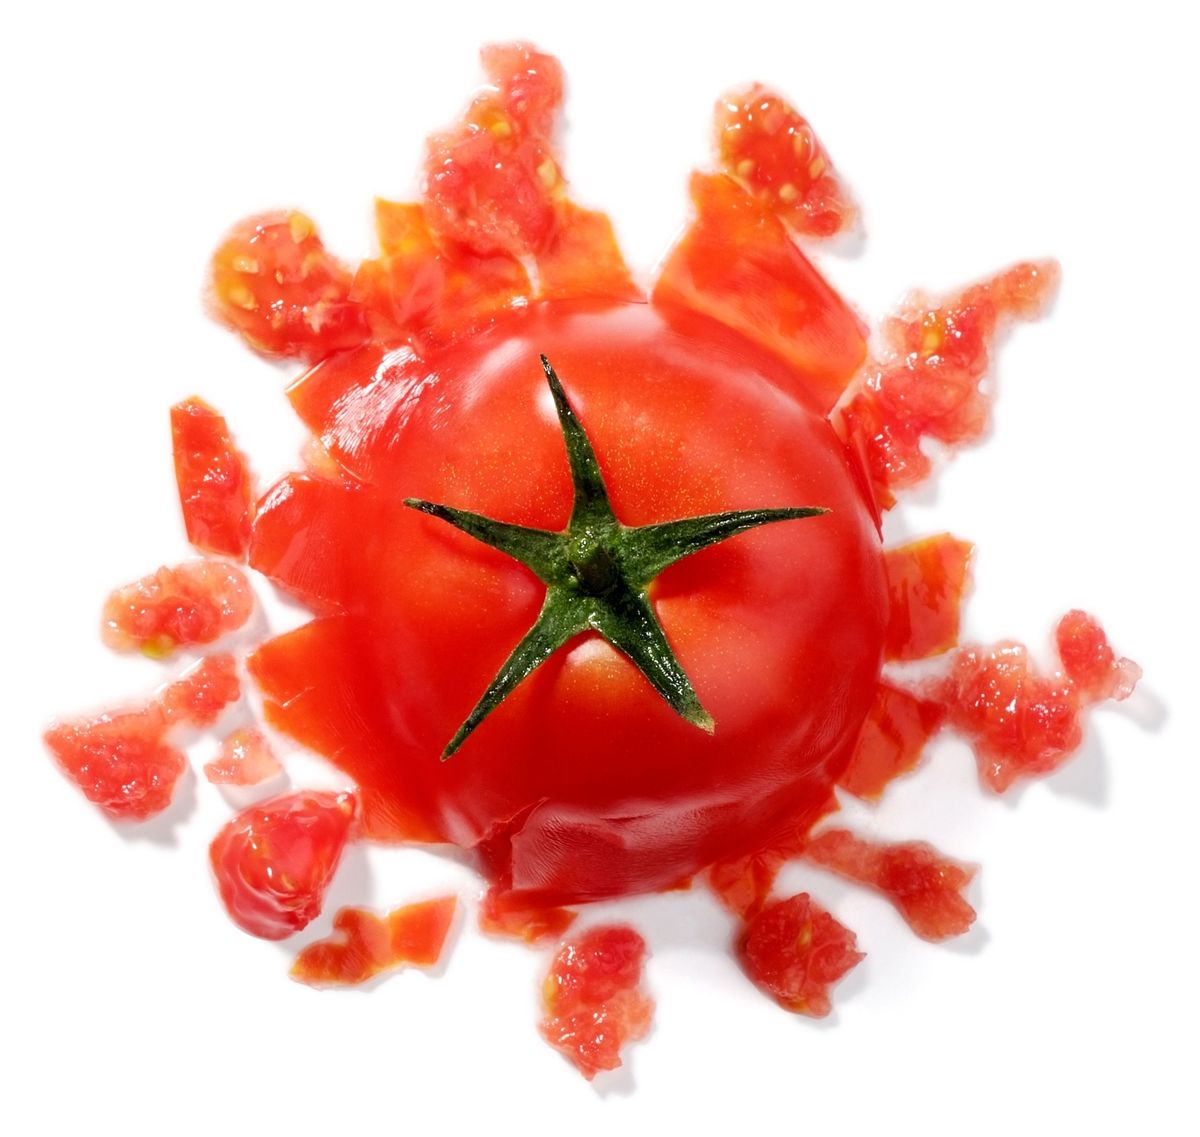 De uitdagingen waarmee boeren te maken krijgen worden door de klimaatverandering verscherpt waardoor het moeilijker wordt om populaire voedselgewassen als tomaten te verbouwen Als het vroeg in het groeiseizoen te warm wordt produceren tomaten geen zaden